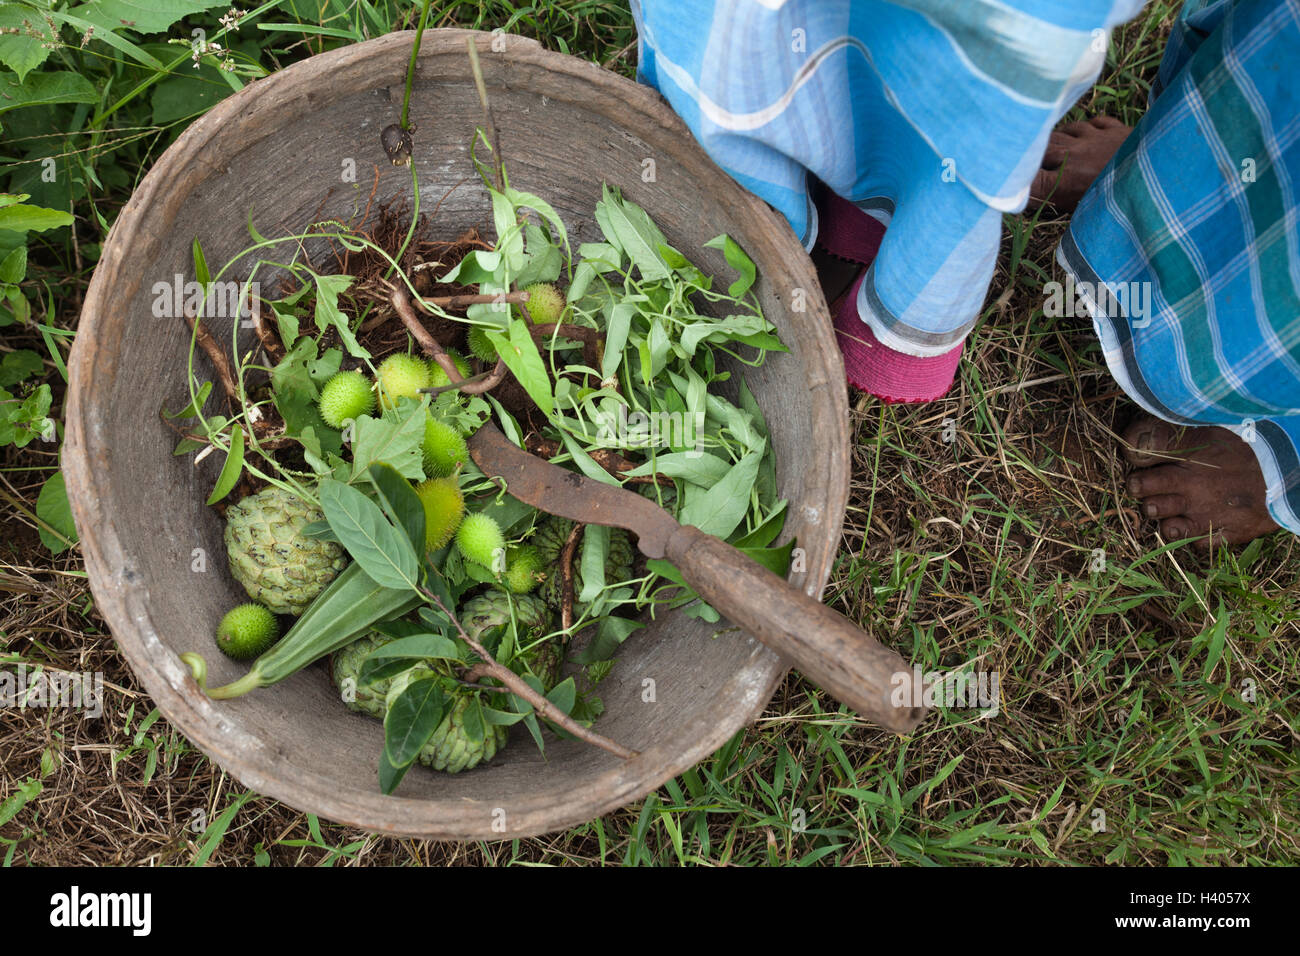 Korb mit nicht angebauten Lebensmitteln, die von indigenen Adivasi-Frauen in den Wäldern von Jharkhand, Indien, gesammelt wurden Stockfoto